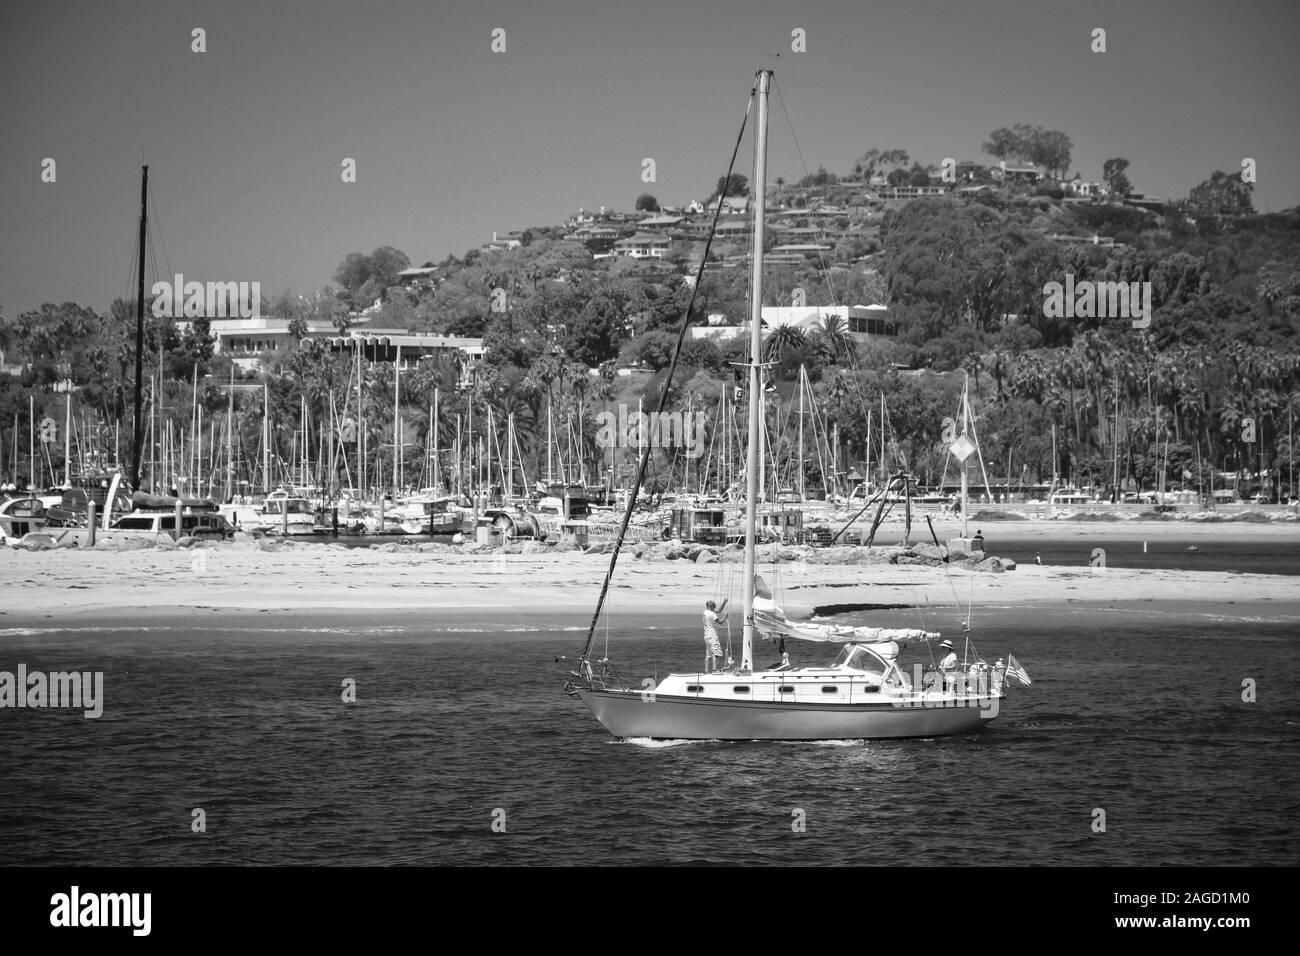 Un homme Hissez la grand voile, tandis qu'une femme dirige un voilier hors du port de Santa Barbara vers le Pacifique à Santa Barbara, CA, en noir et blanc Banque D'Images